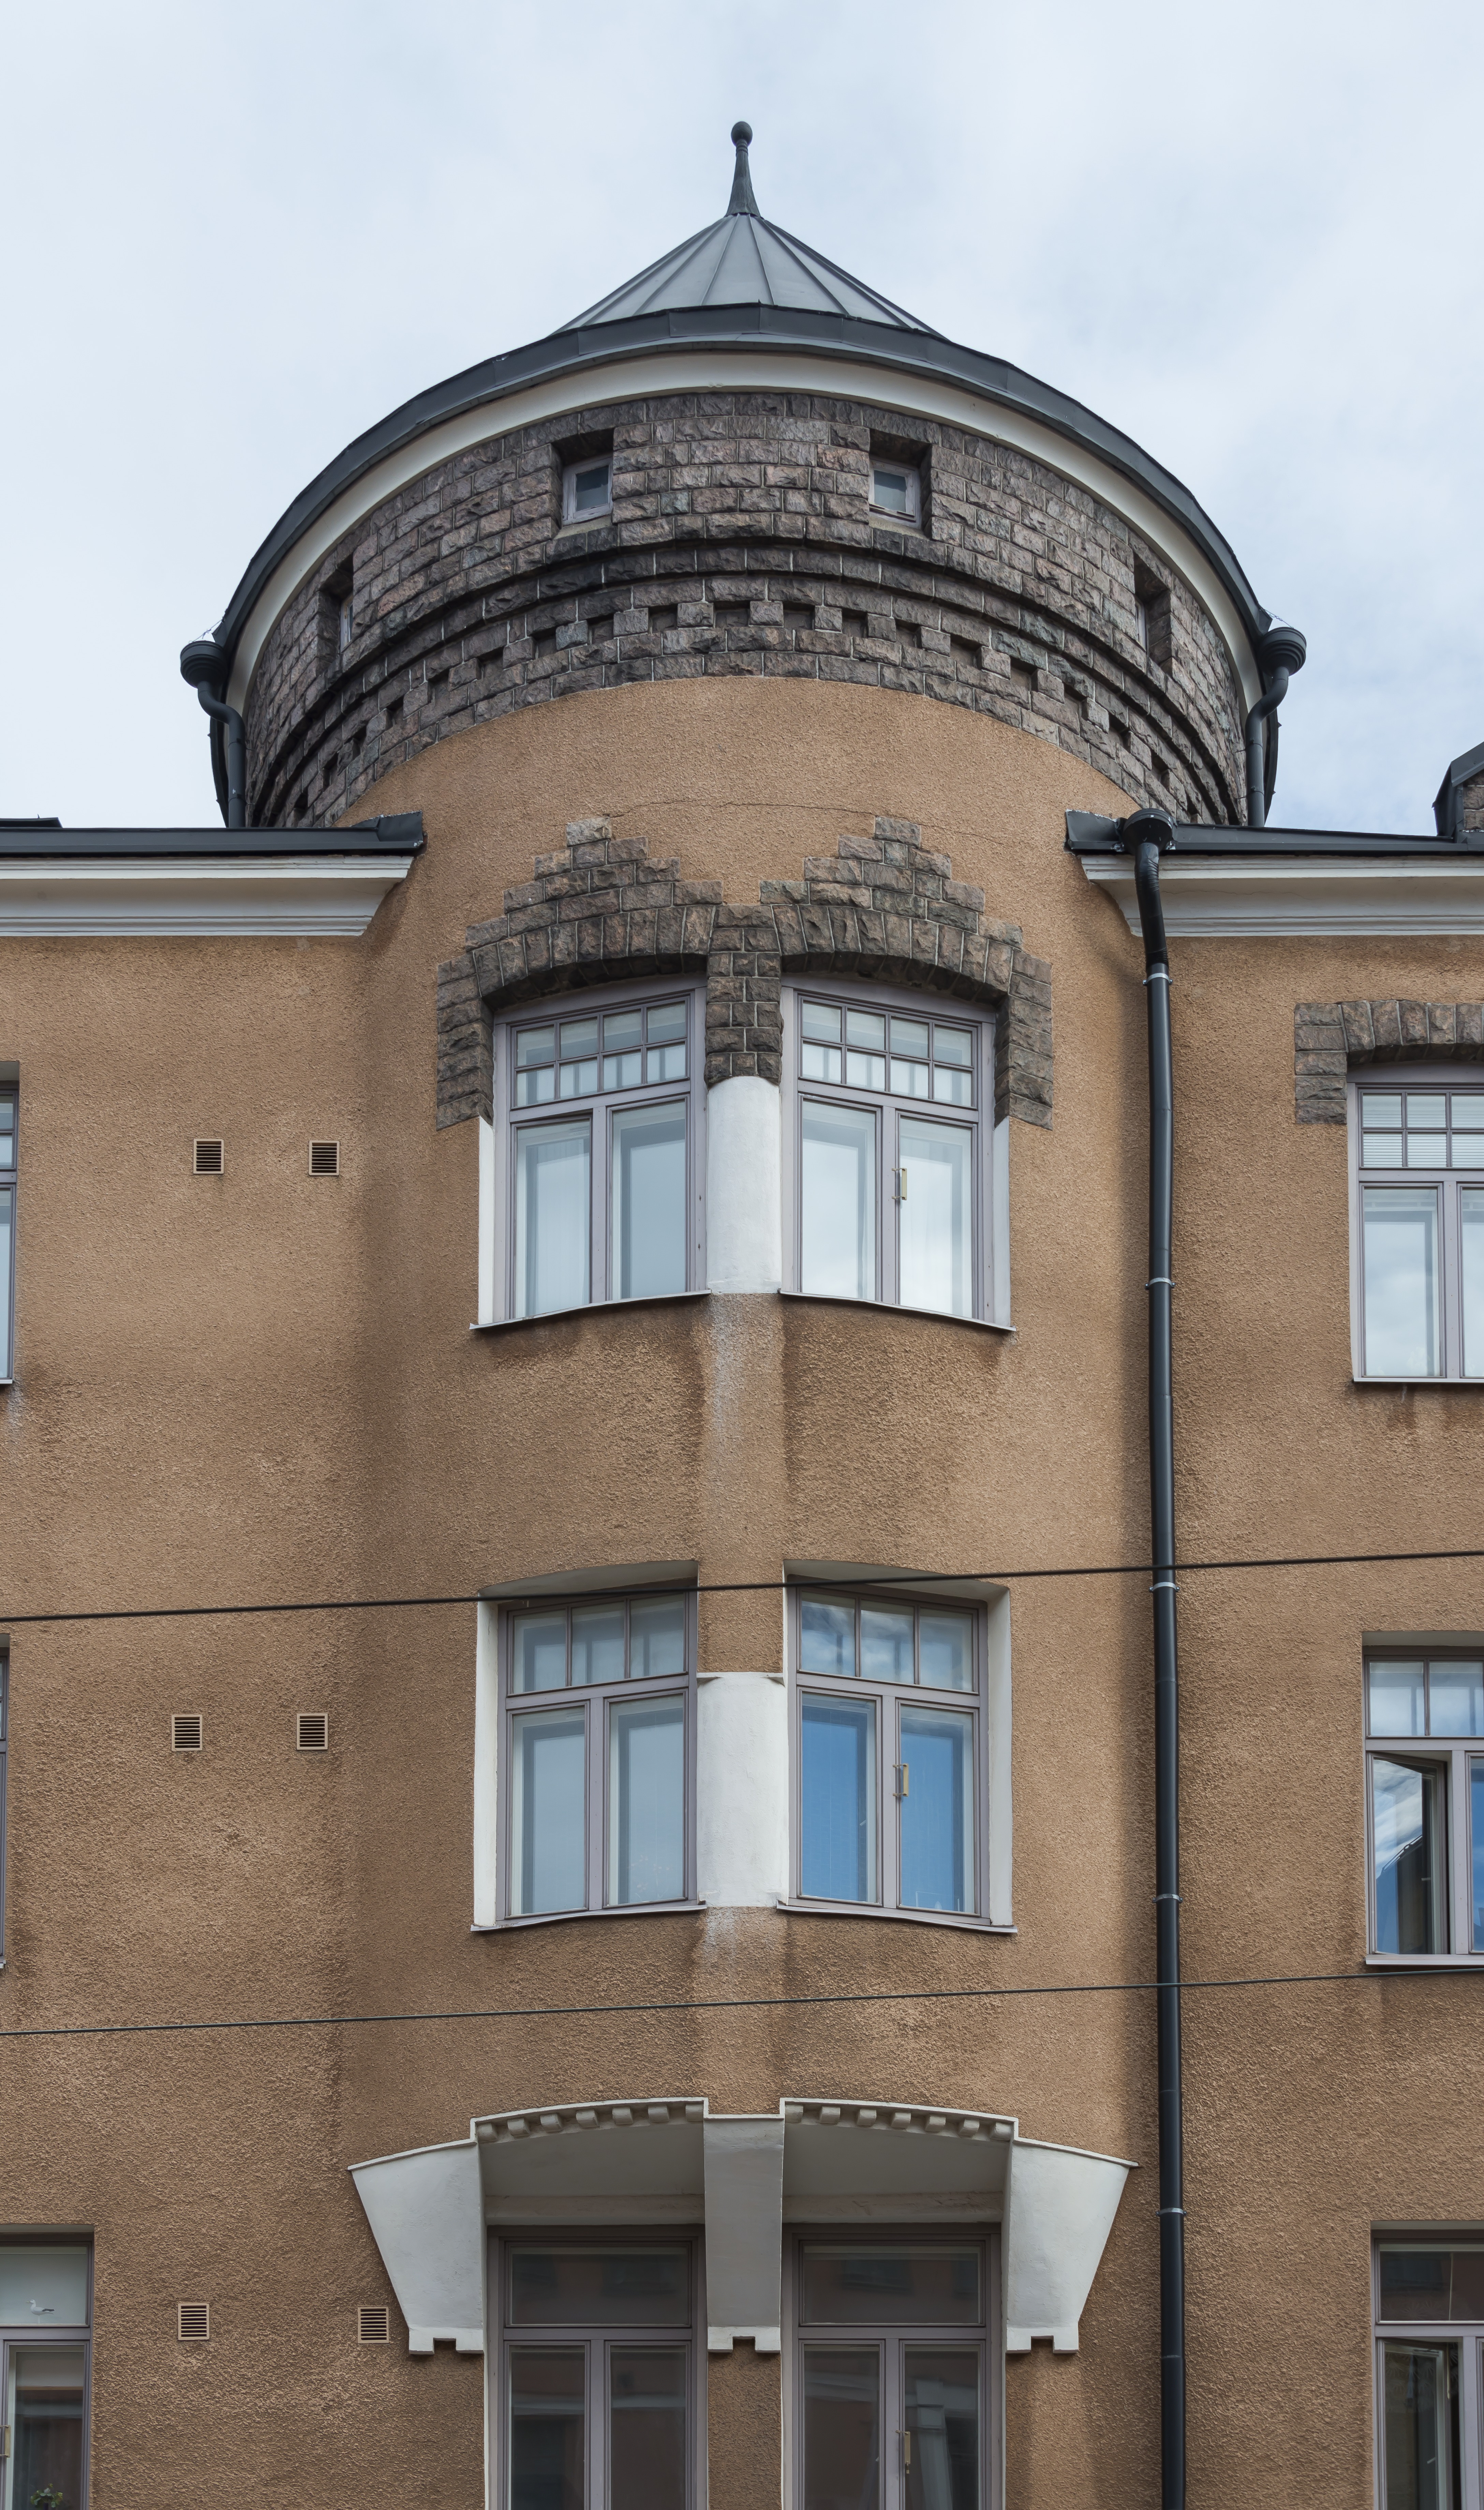 Tehtaankatu 19. Rakennusmestari Paul Björkin suunnittelema rakennus "Koivu". Rakennusvuosi 1904. Yksityiskohta - torni